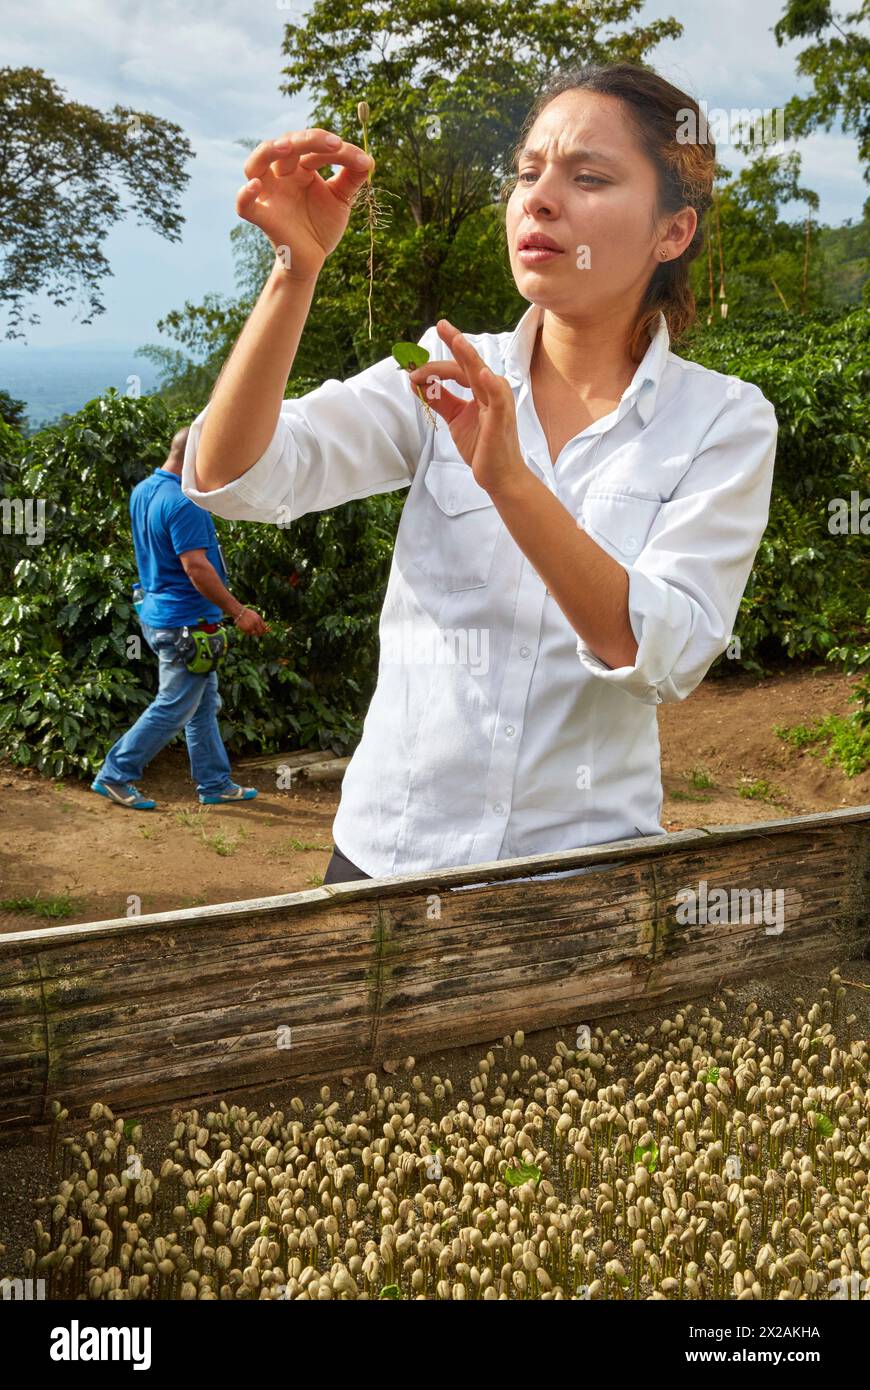 Germinated coffee, Hacienda San Alberto, Cafetal, Coffee plantations, Coffee Cultural Landscape, Buenavista, Quindio, Colombia, South America Stock Photo